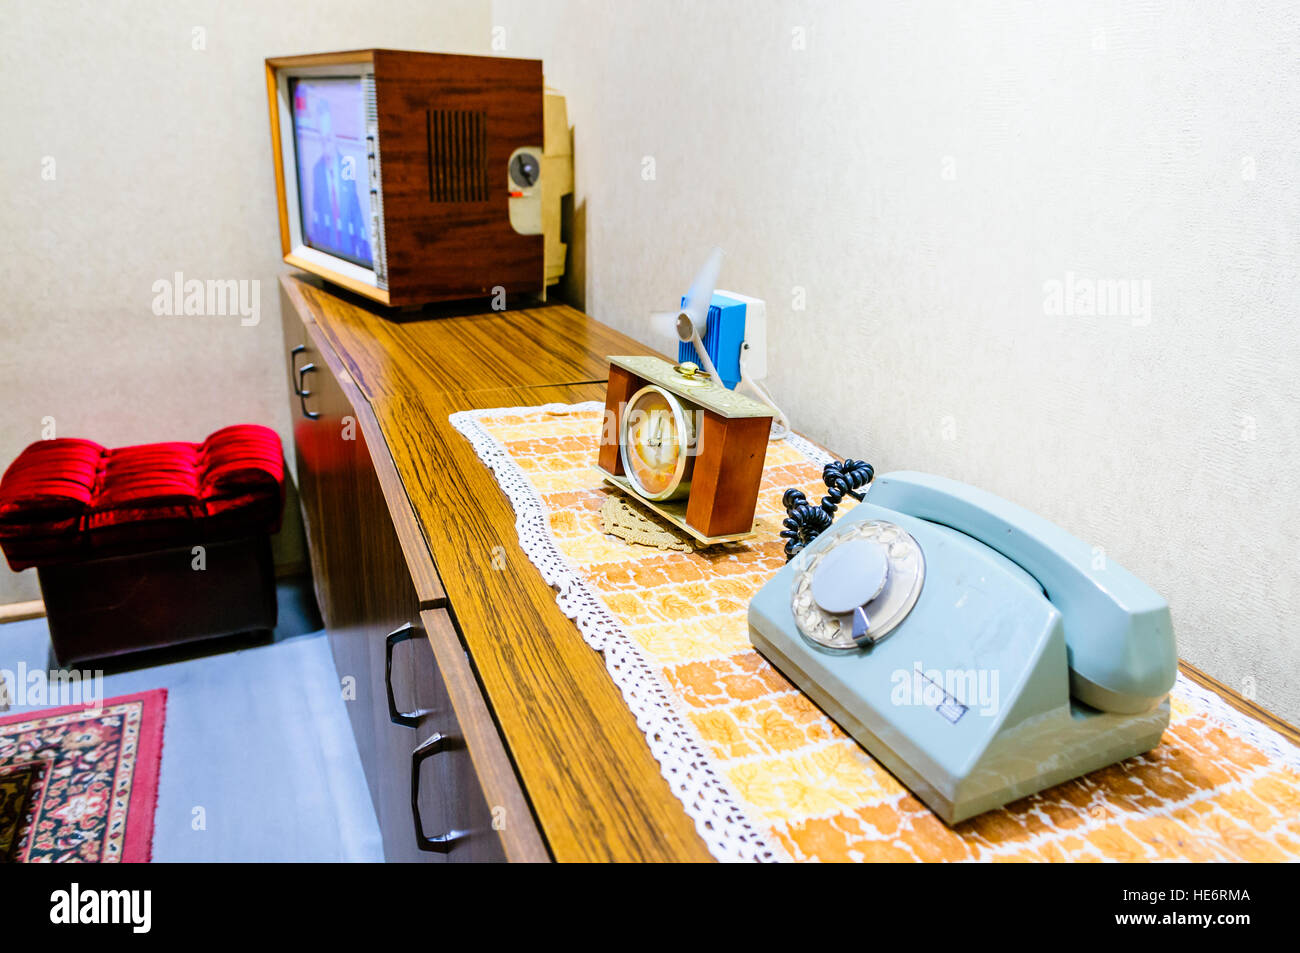 Möbel in einem typischen, alten altmodischen polnischen Wohnzimmer aus der 1970er/1980er Jahren sowjetischen kommunistischen Ära Stockfoto